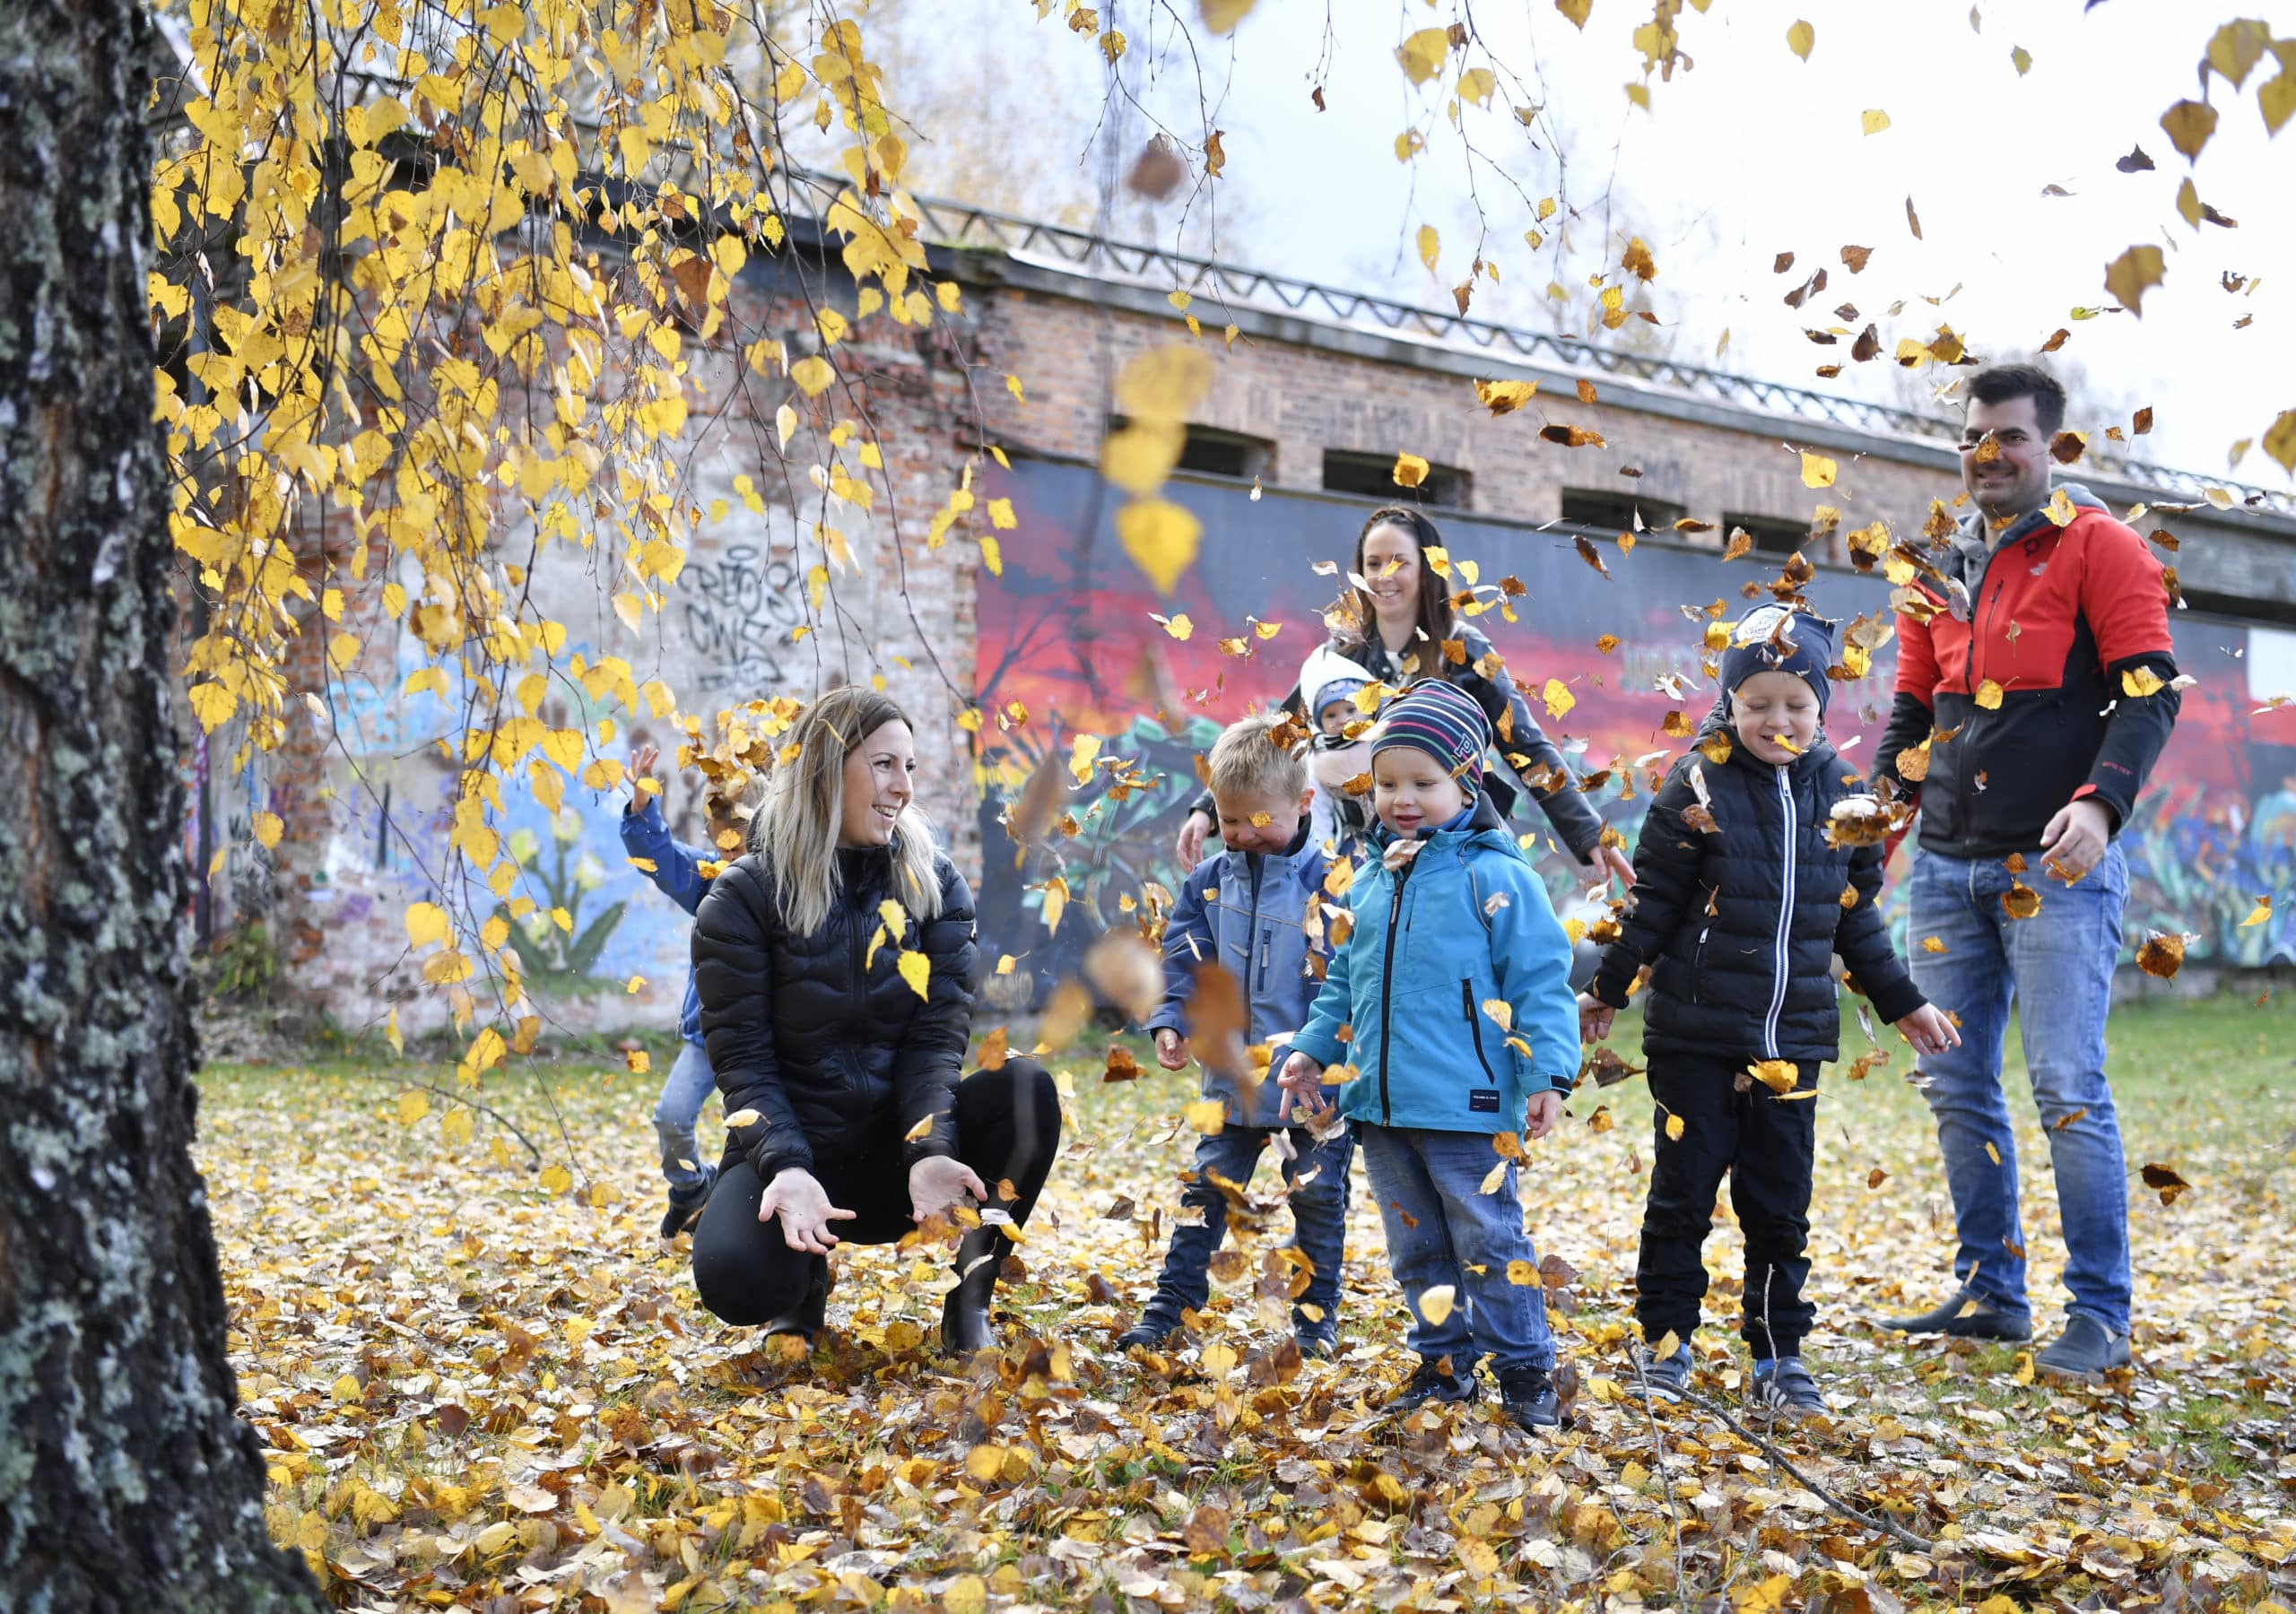 Barnfamilj leker vid Laxholmen. Alla är samlade under en björk och kastar gula höstlöv i luften.